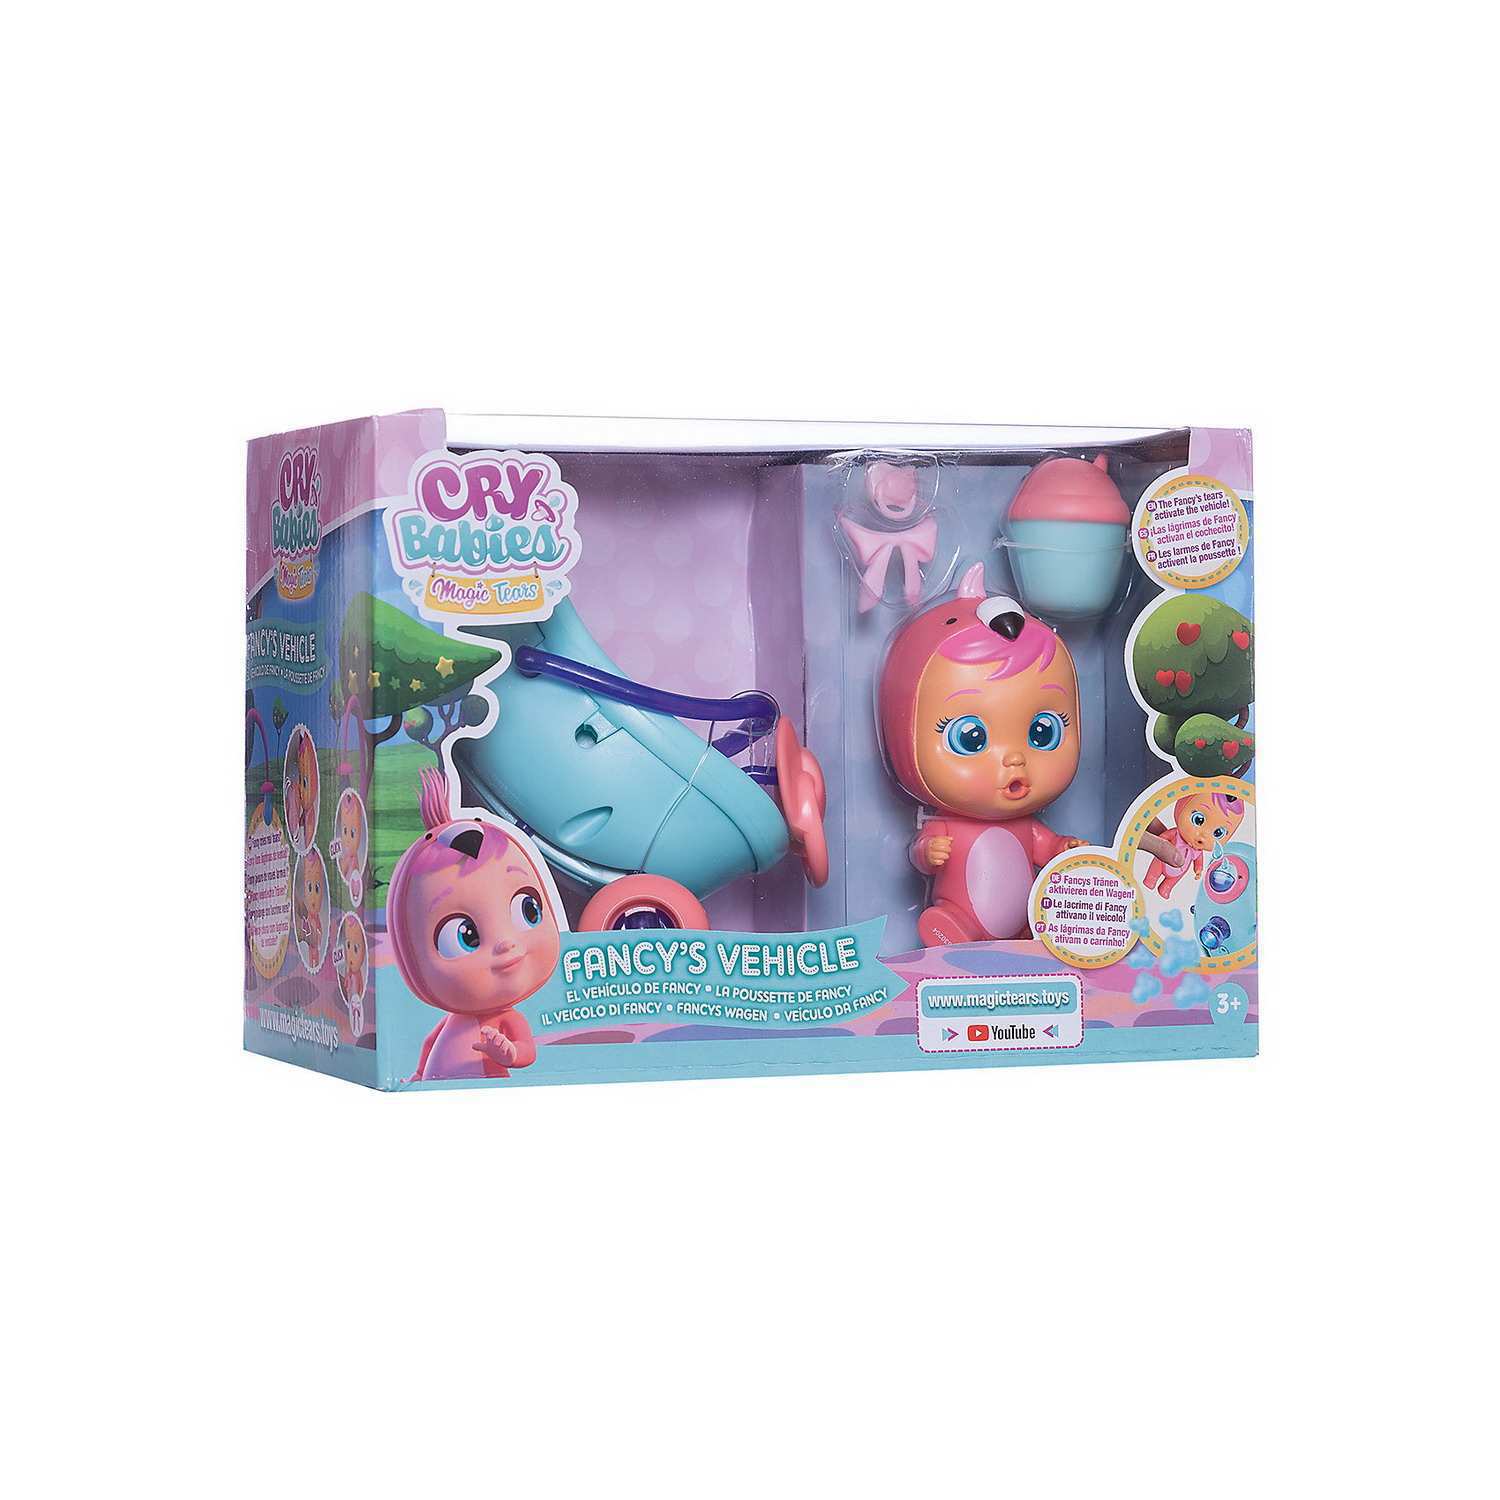 Кукла IMC Toys Cry Babies Плачущий младенец Fancy новая серия, 31 см